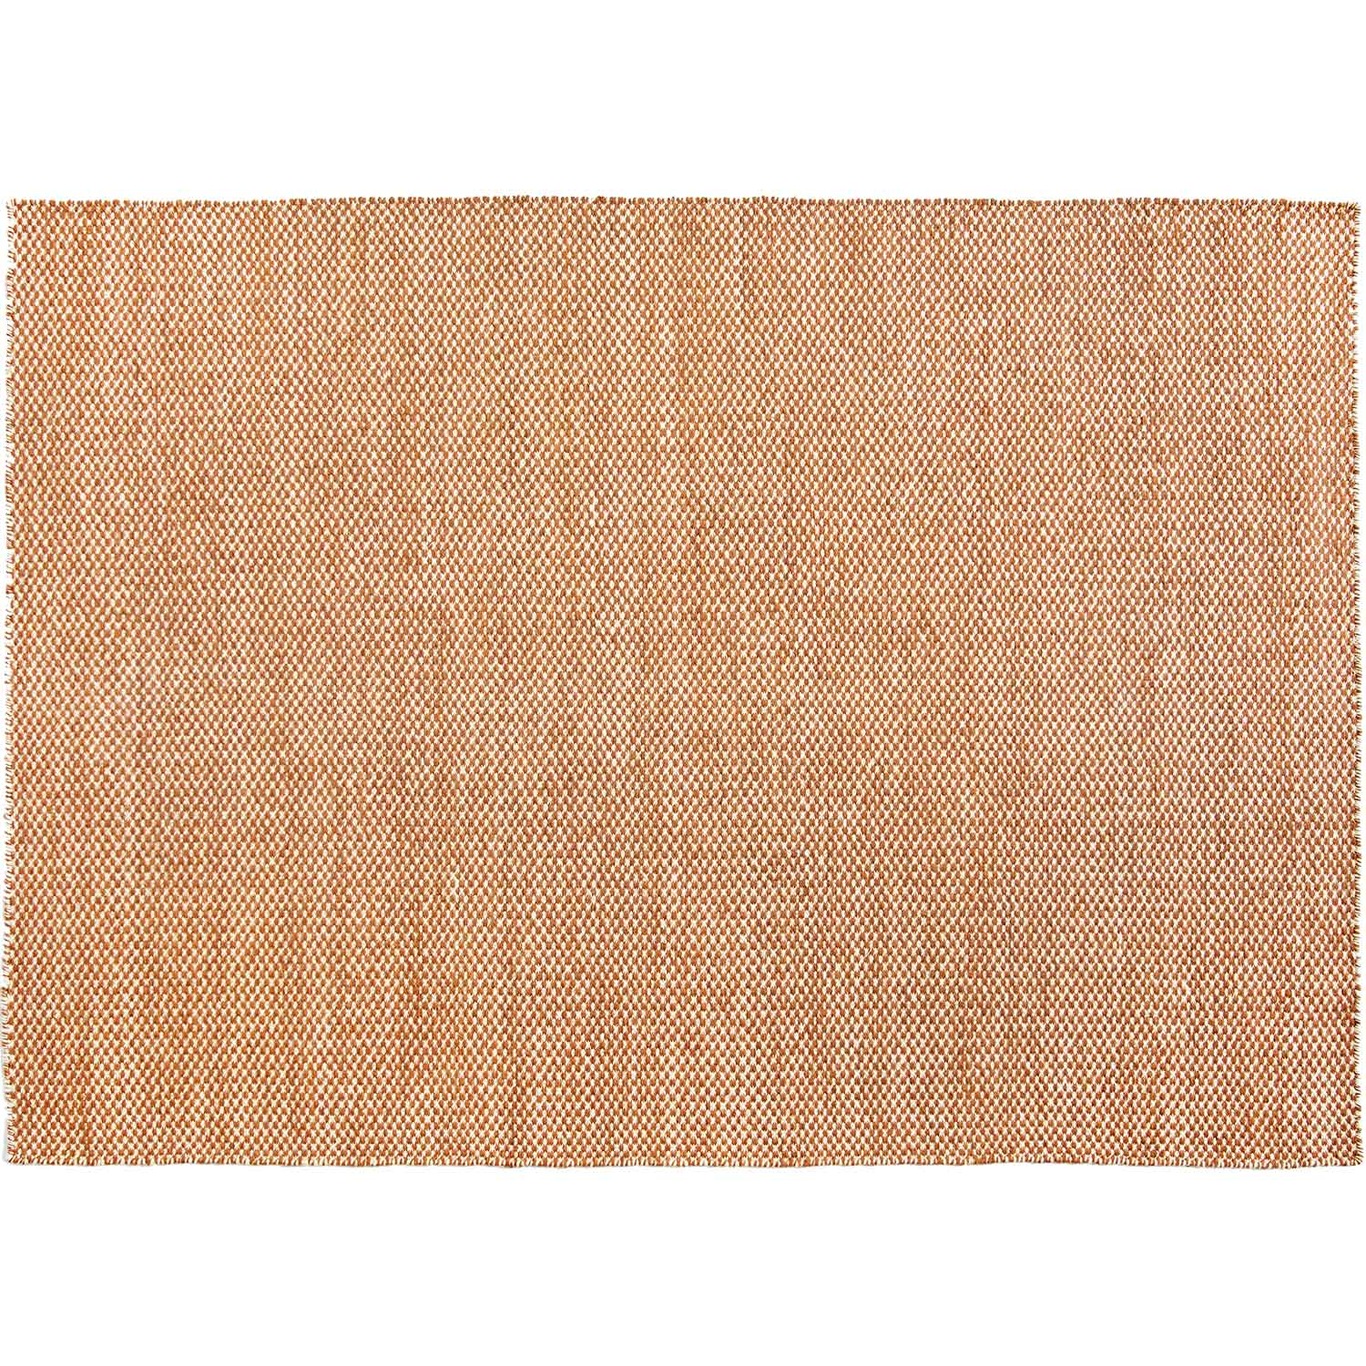 Moiré Kelim Teppich, 200x300 cm / Cinnamon